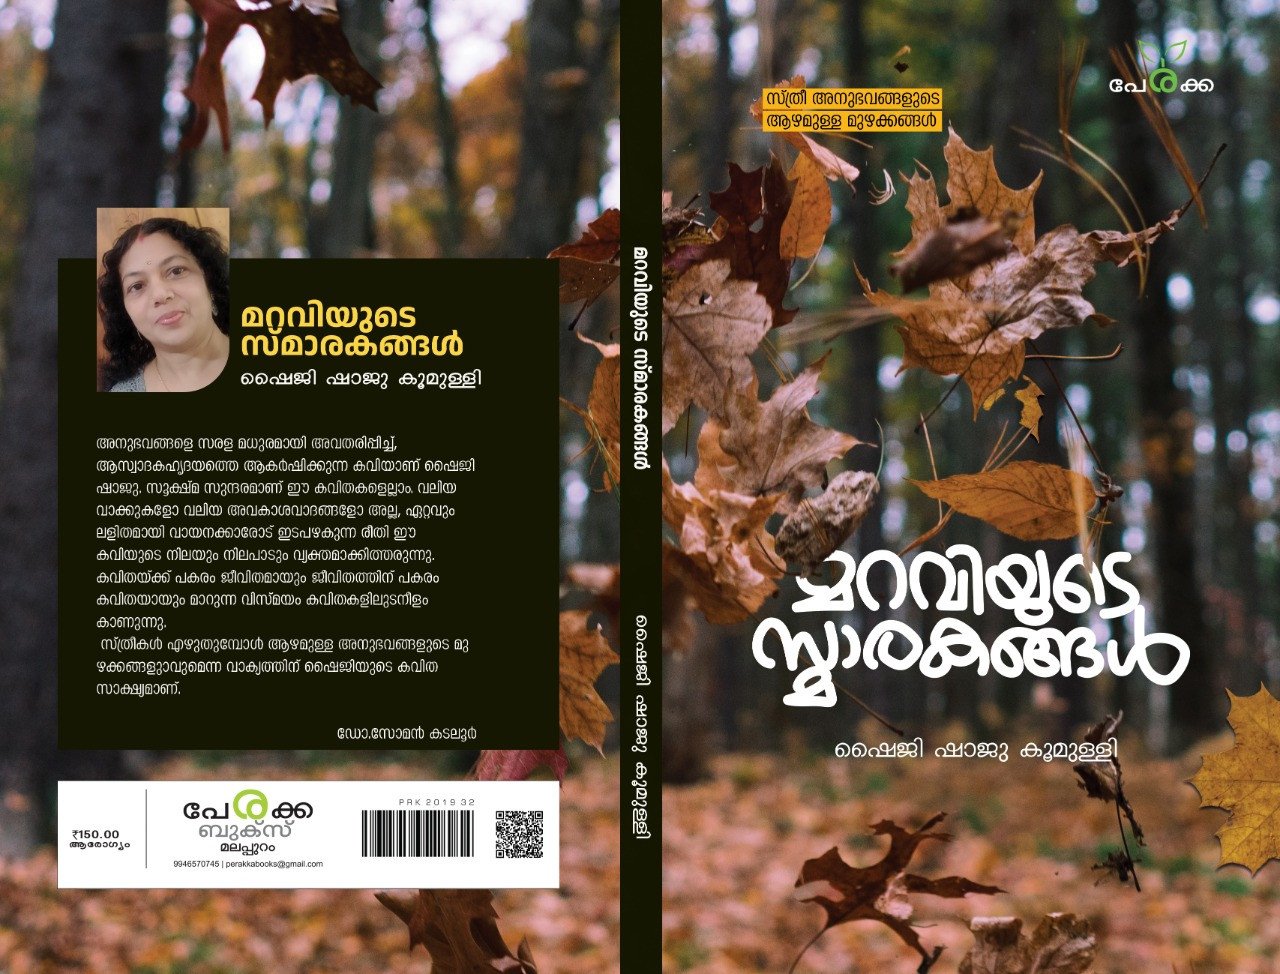 മറവിയുടെ സ്മാരകങ്ങൾ - ഷൈജി ഷാജു കൂമുള്ളി - Maraviyude Smakarakangal - Shaiji Shaju Koomulli - Perakka Books